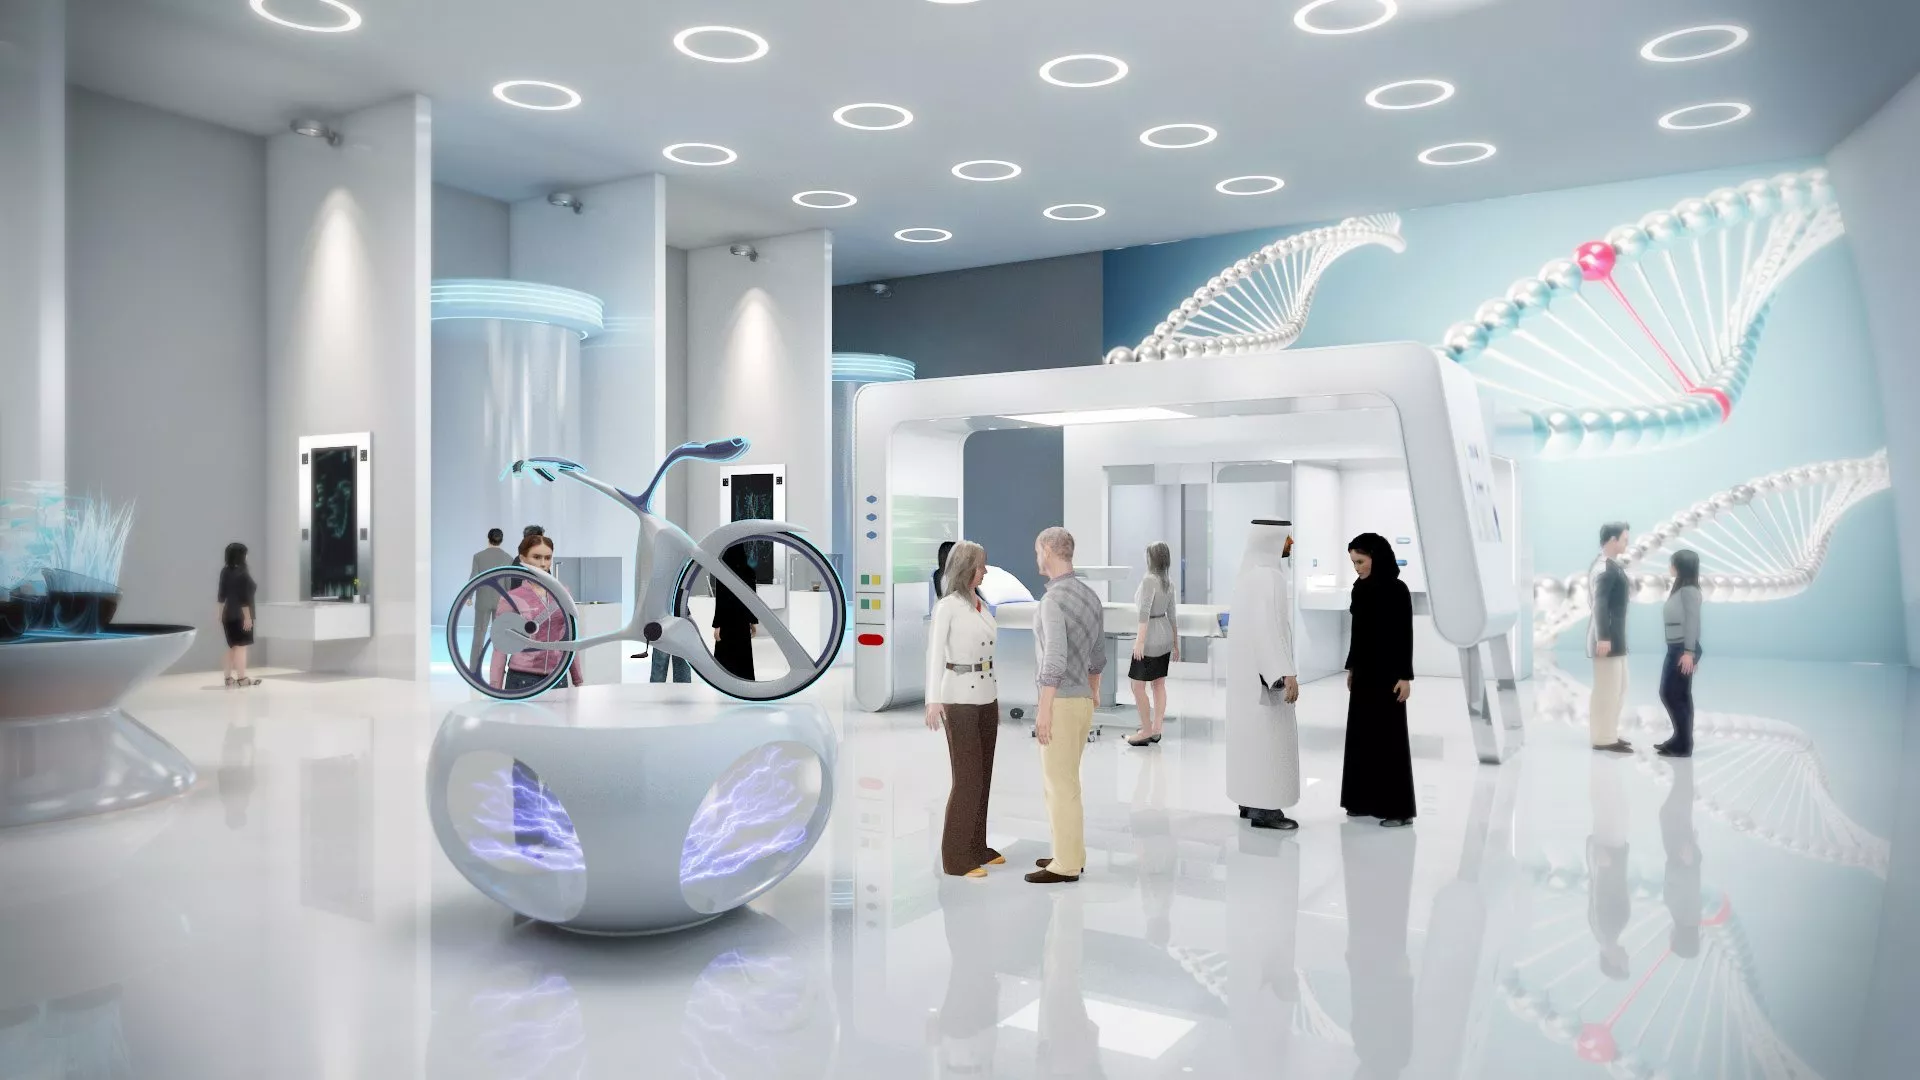 افتتاح متحف المستقبل في دبي: عرض خيالي تعجز الكلمات عن وصفه!